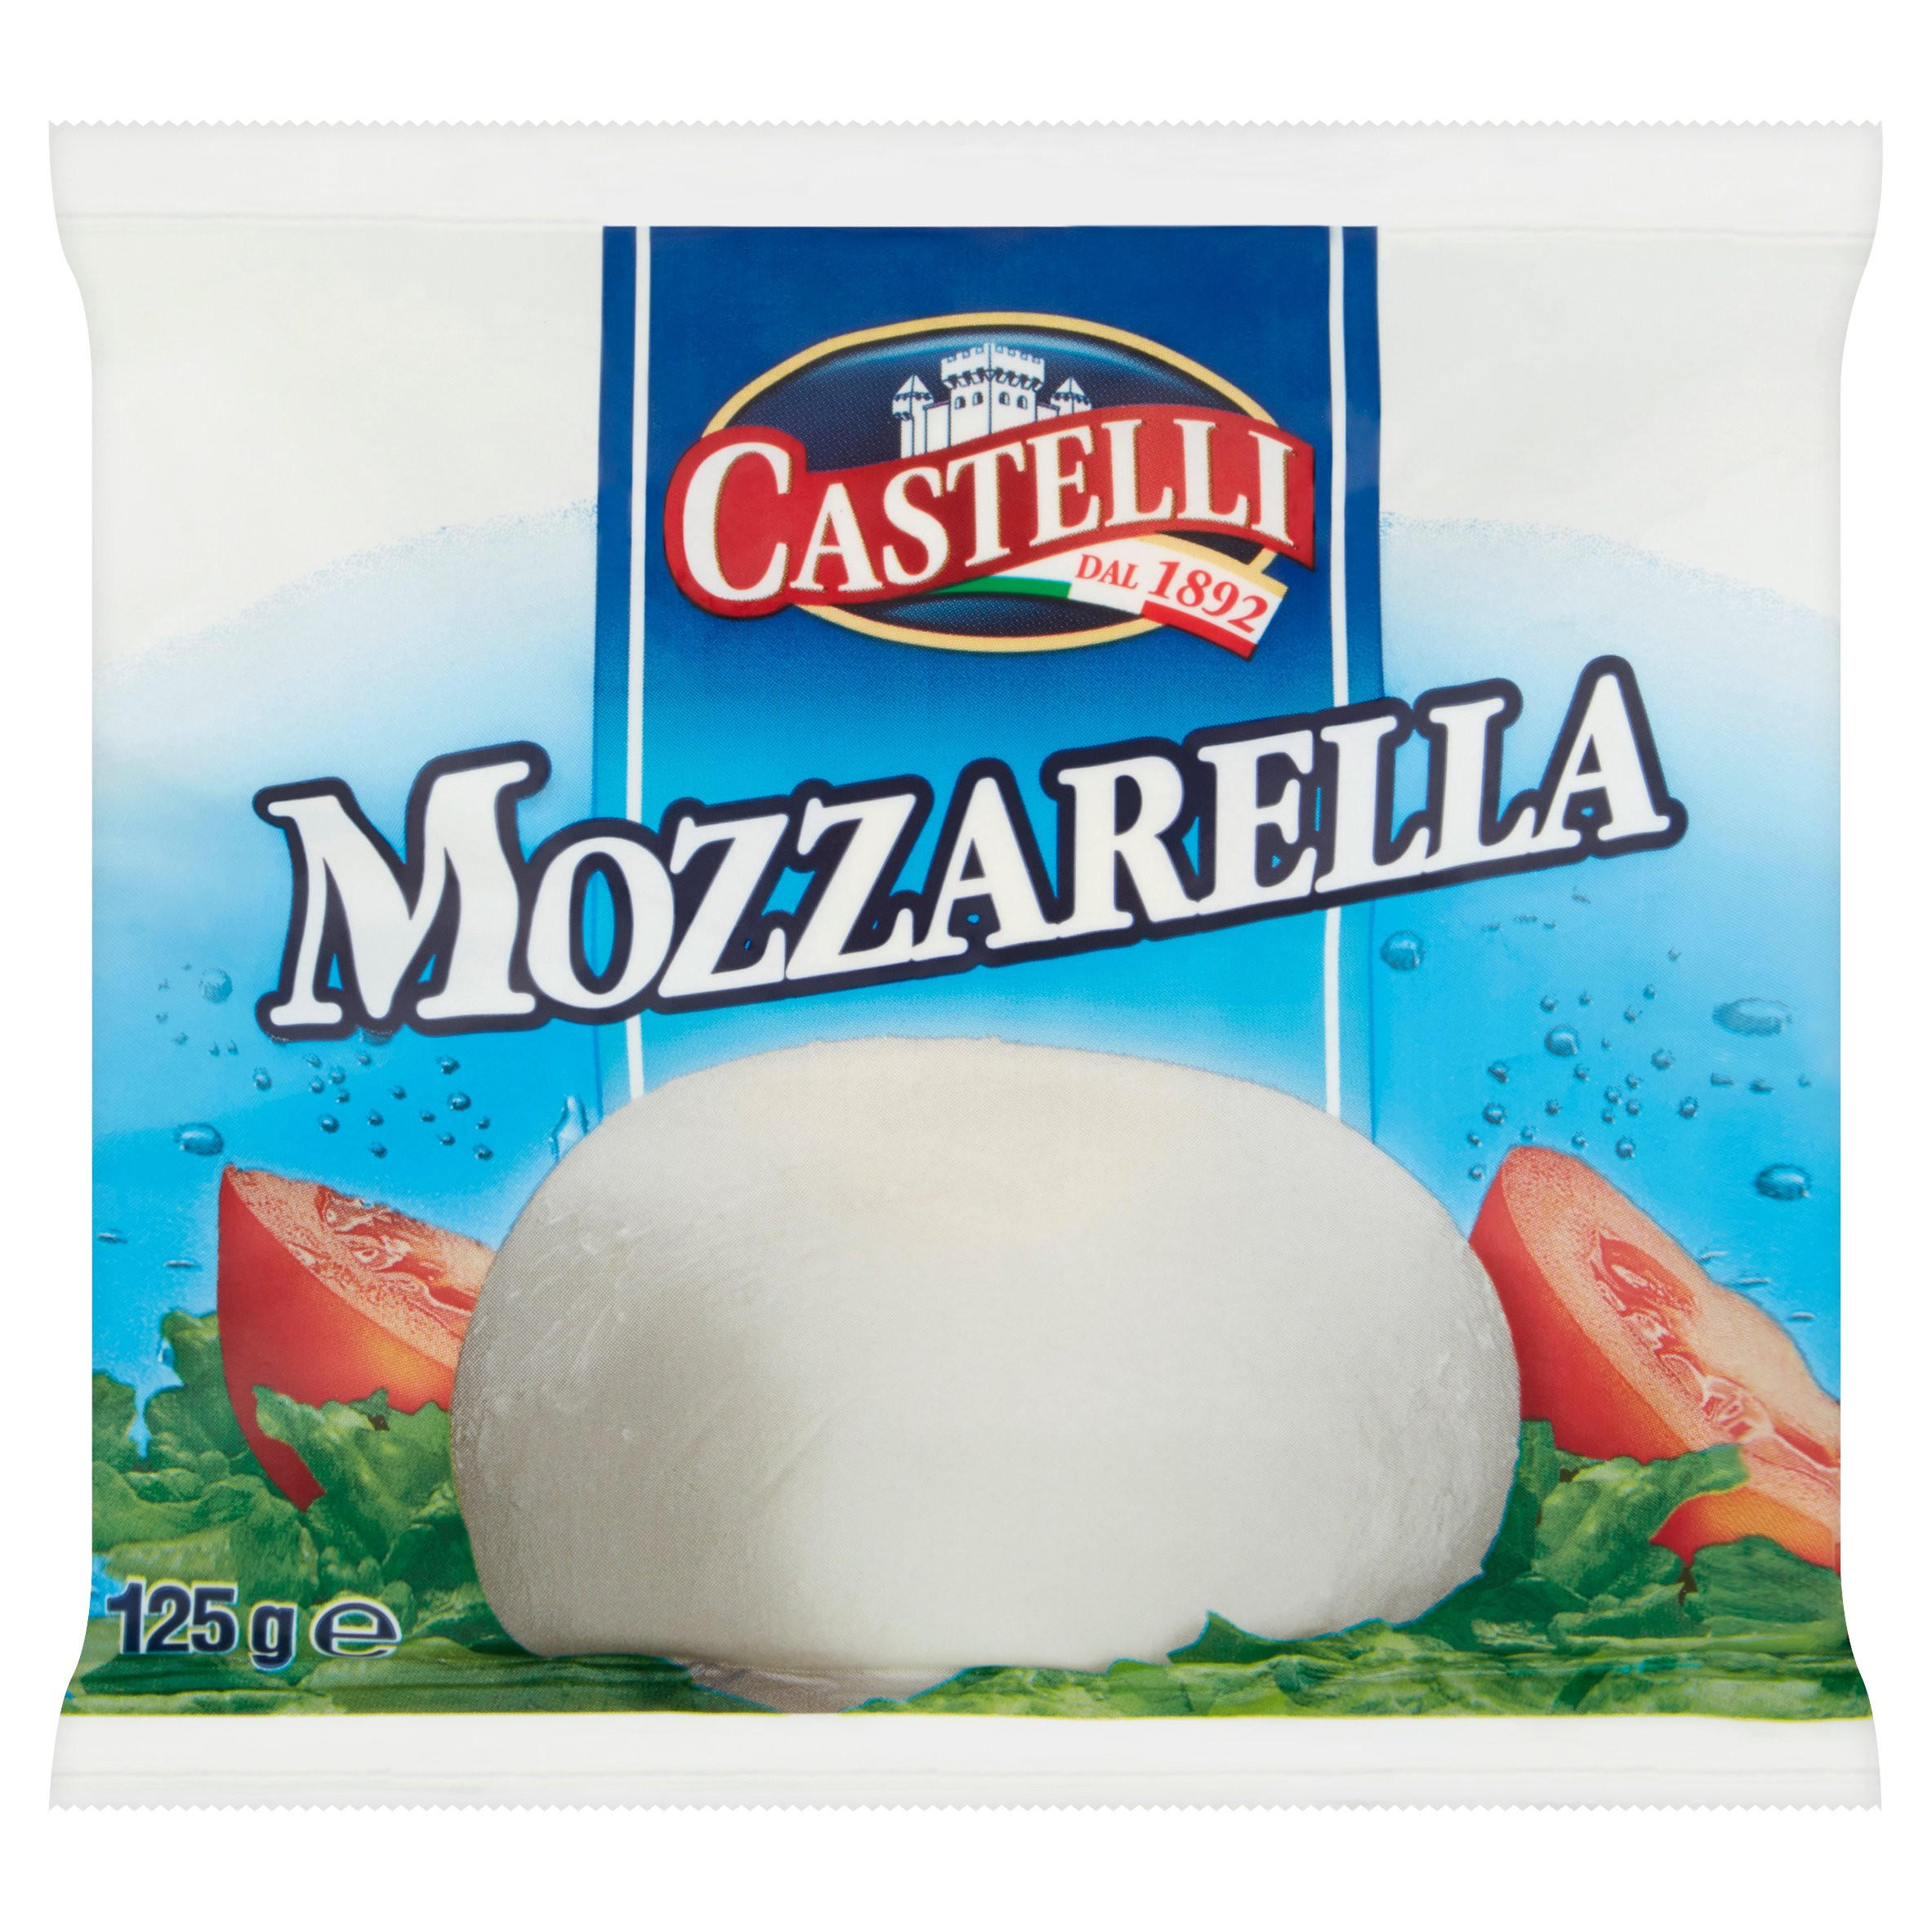 Mozzarella, 125g